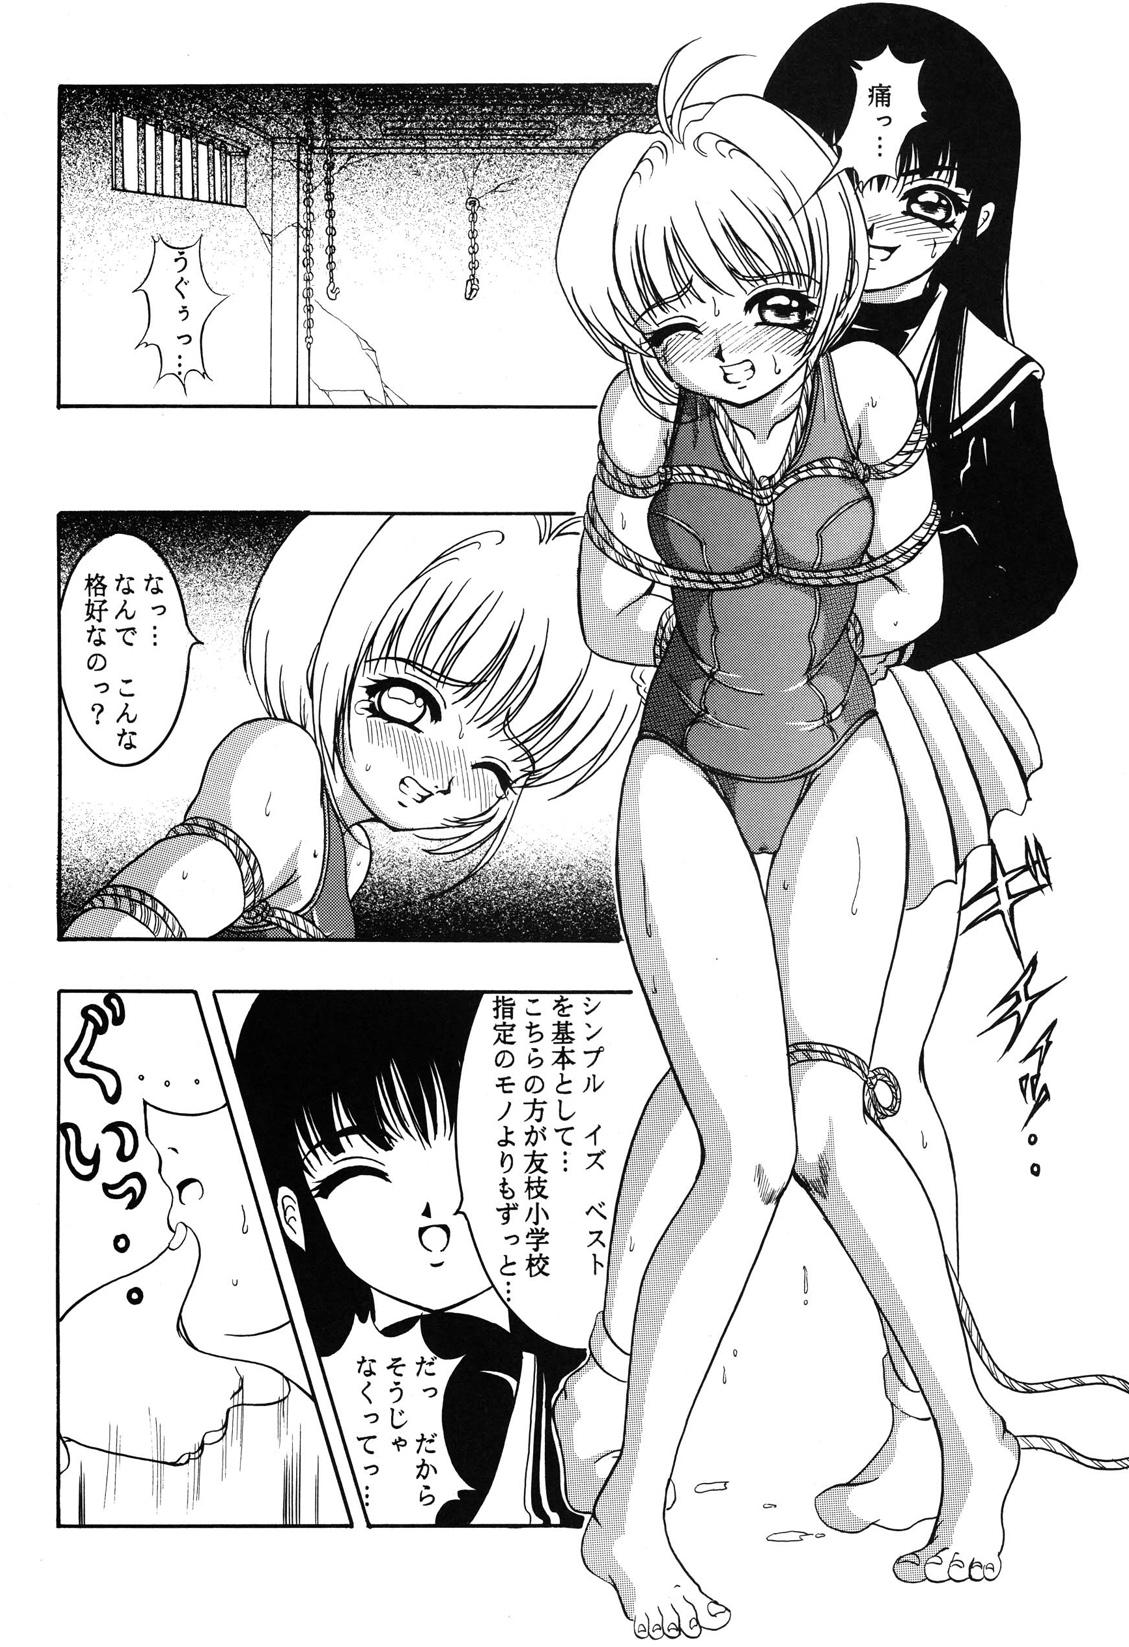 Sucks Hana ni Arashi no Rei hemo Aruzo - Cardcaptor sakura Cocks - Page 7